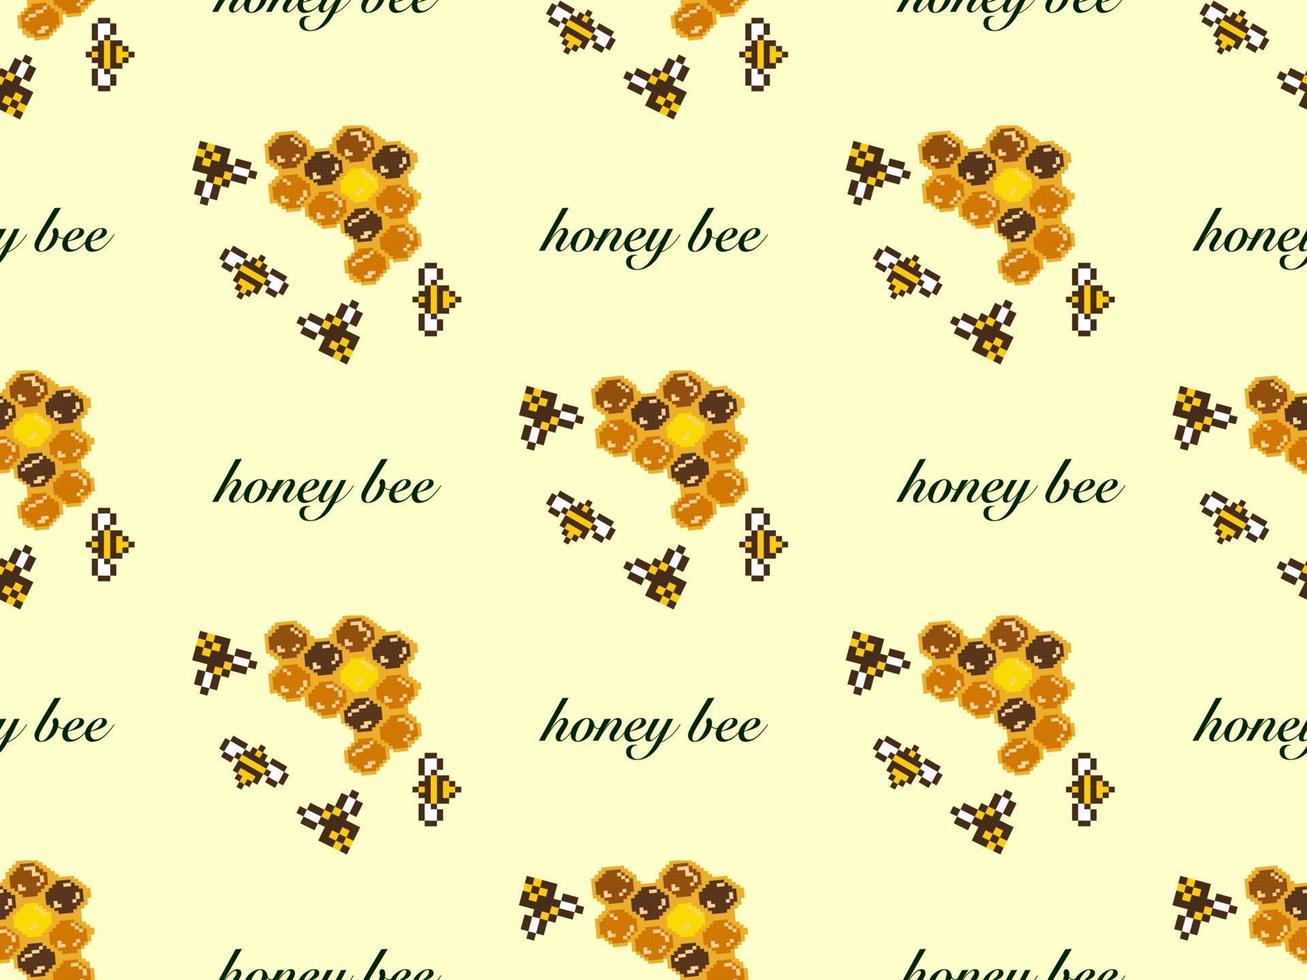 honingbij cartoon karakter naadloos patroon op gele background.pixel stijl vector